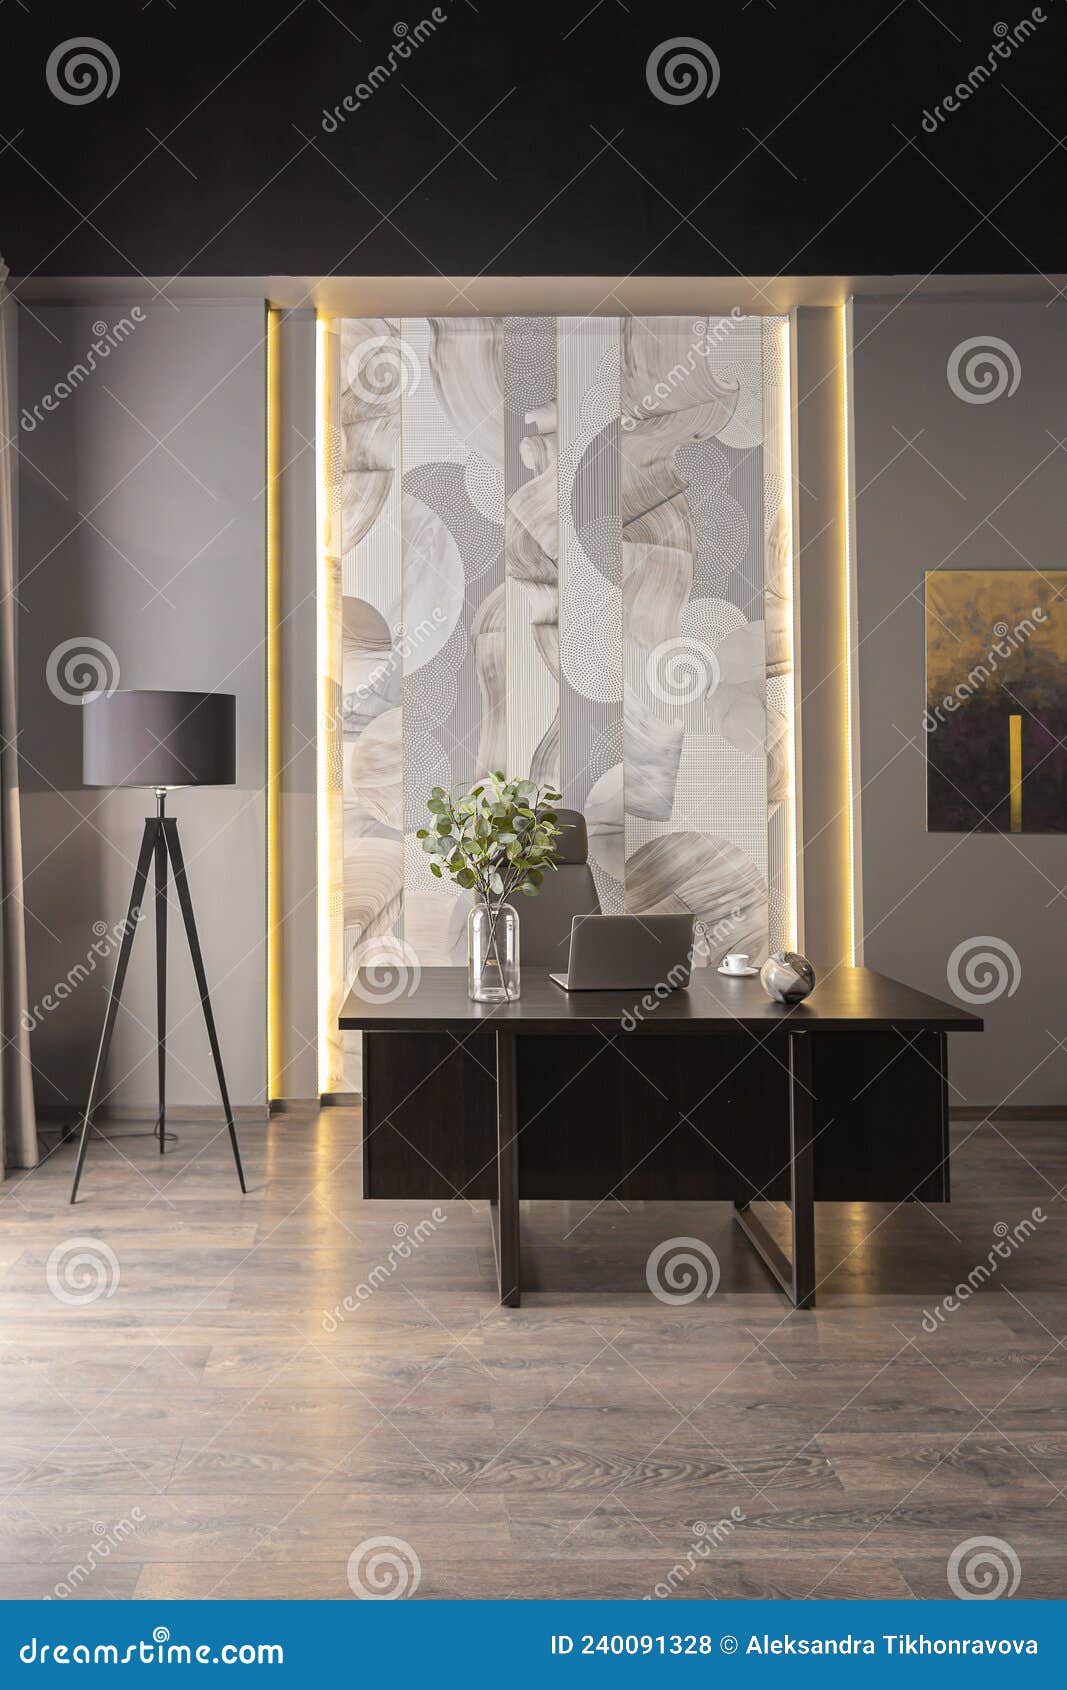 Interior Elegante De Casa De Luxo Num Apartamento Brutal Ultramoderno Em  Cores Escuras E Iluminação Elegante Imagem de Stock - Imagem de descanso,  madeira: 240091283